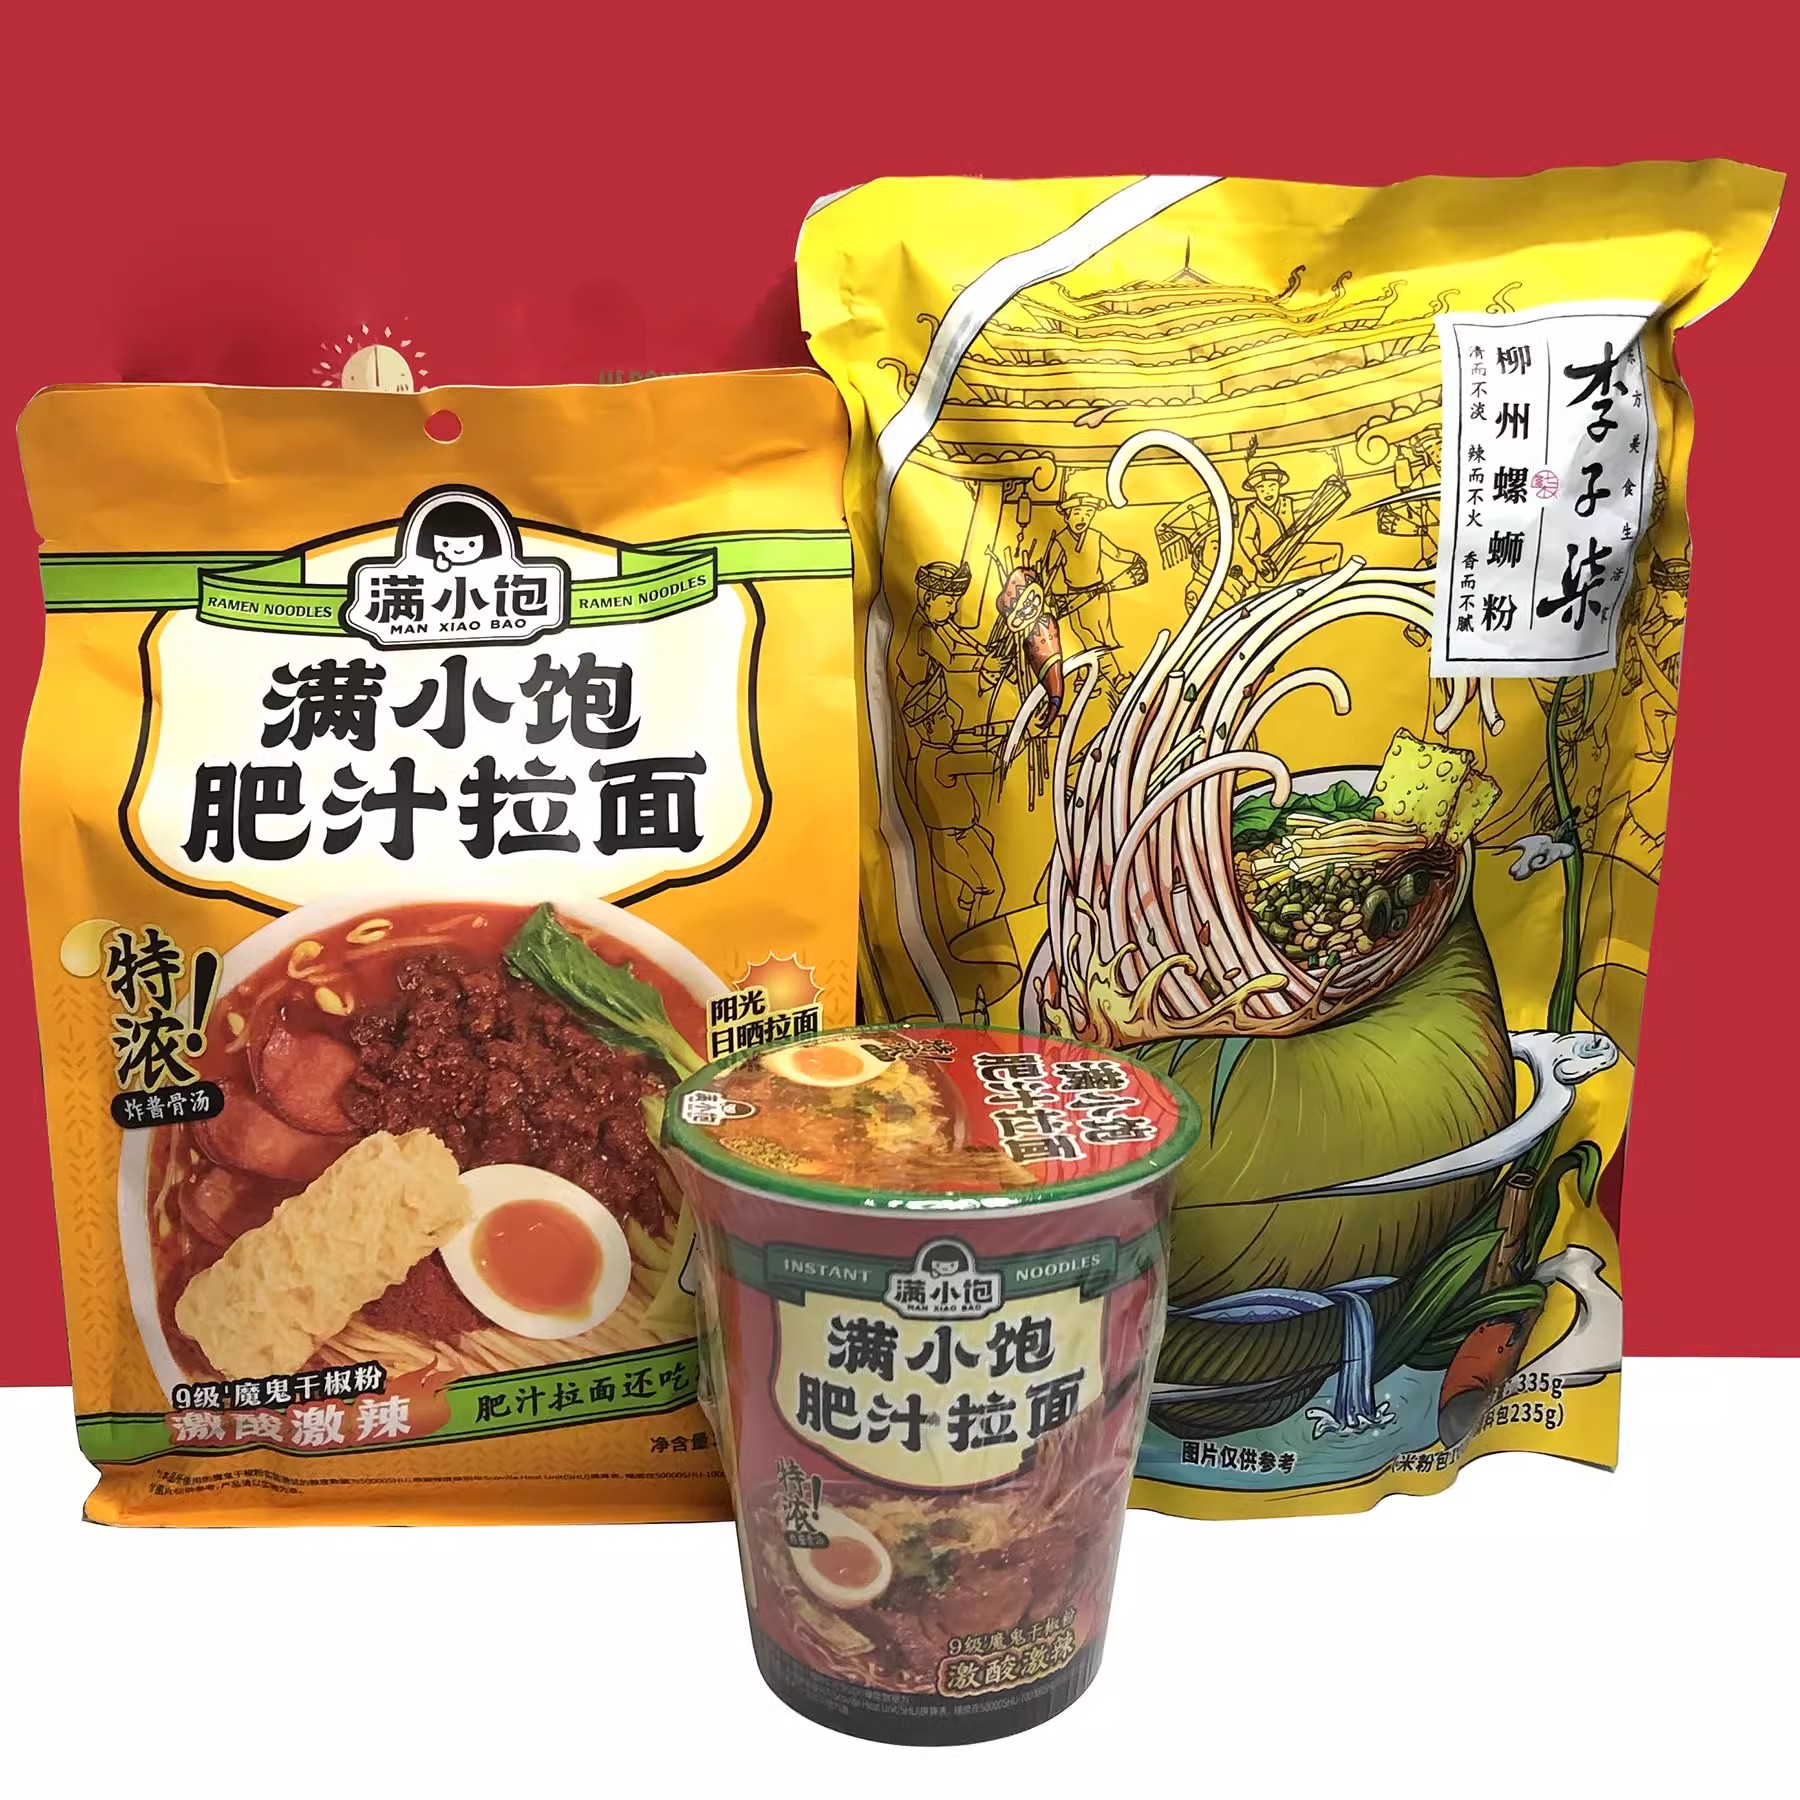 国产多品牌柳州螺蛳粉/肥汁拉面美味方便速食小吃临期特价